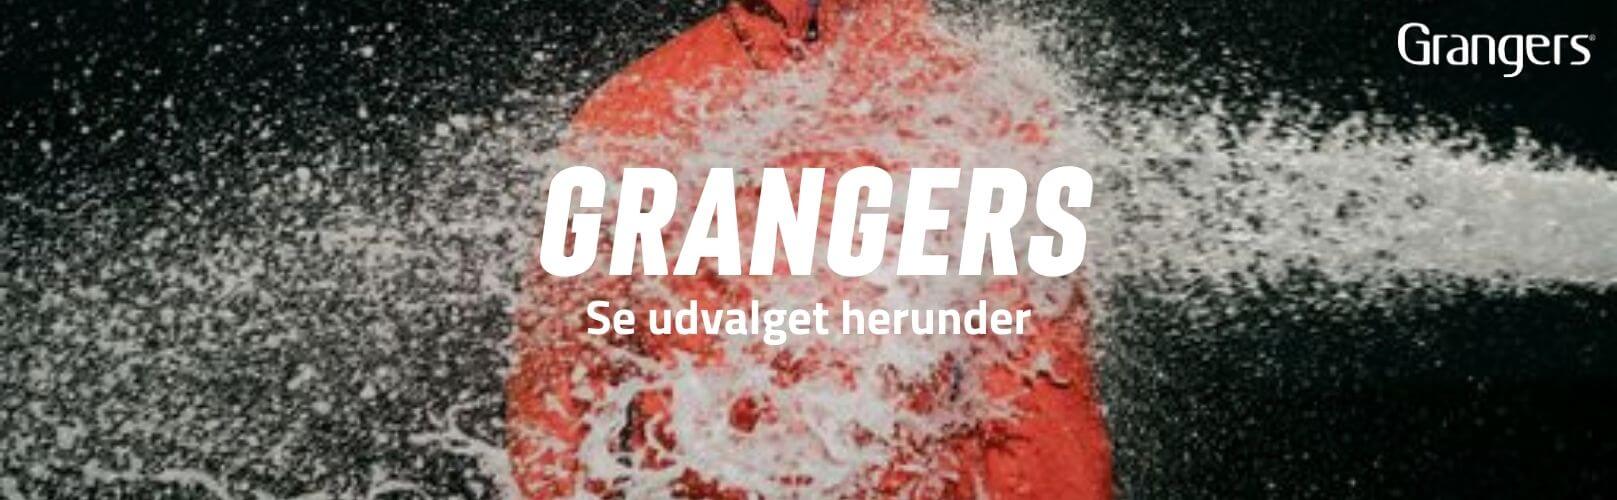 Grangers brand banner